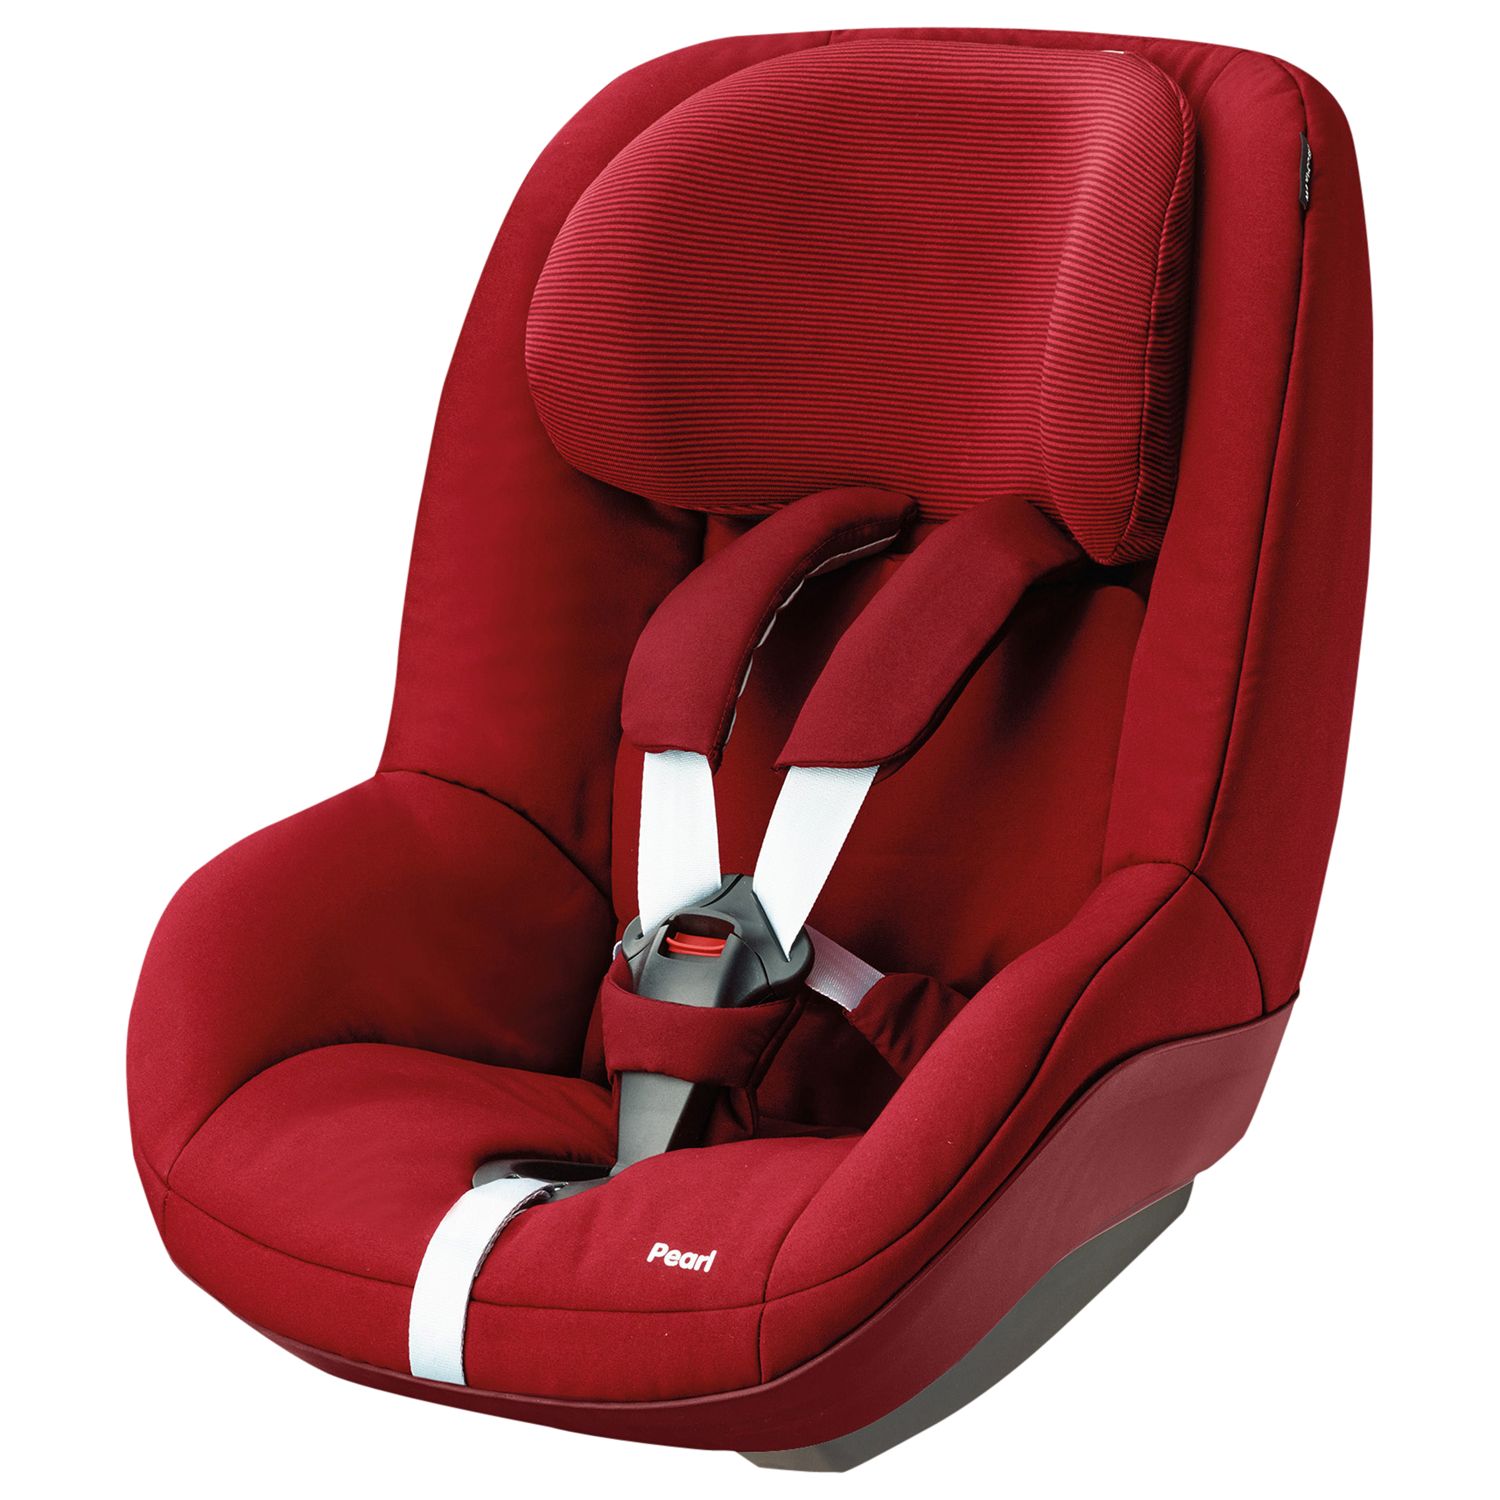 Maxi-Cosi Pearl Group 1 Seat, Robin Red